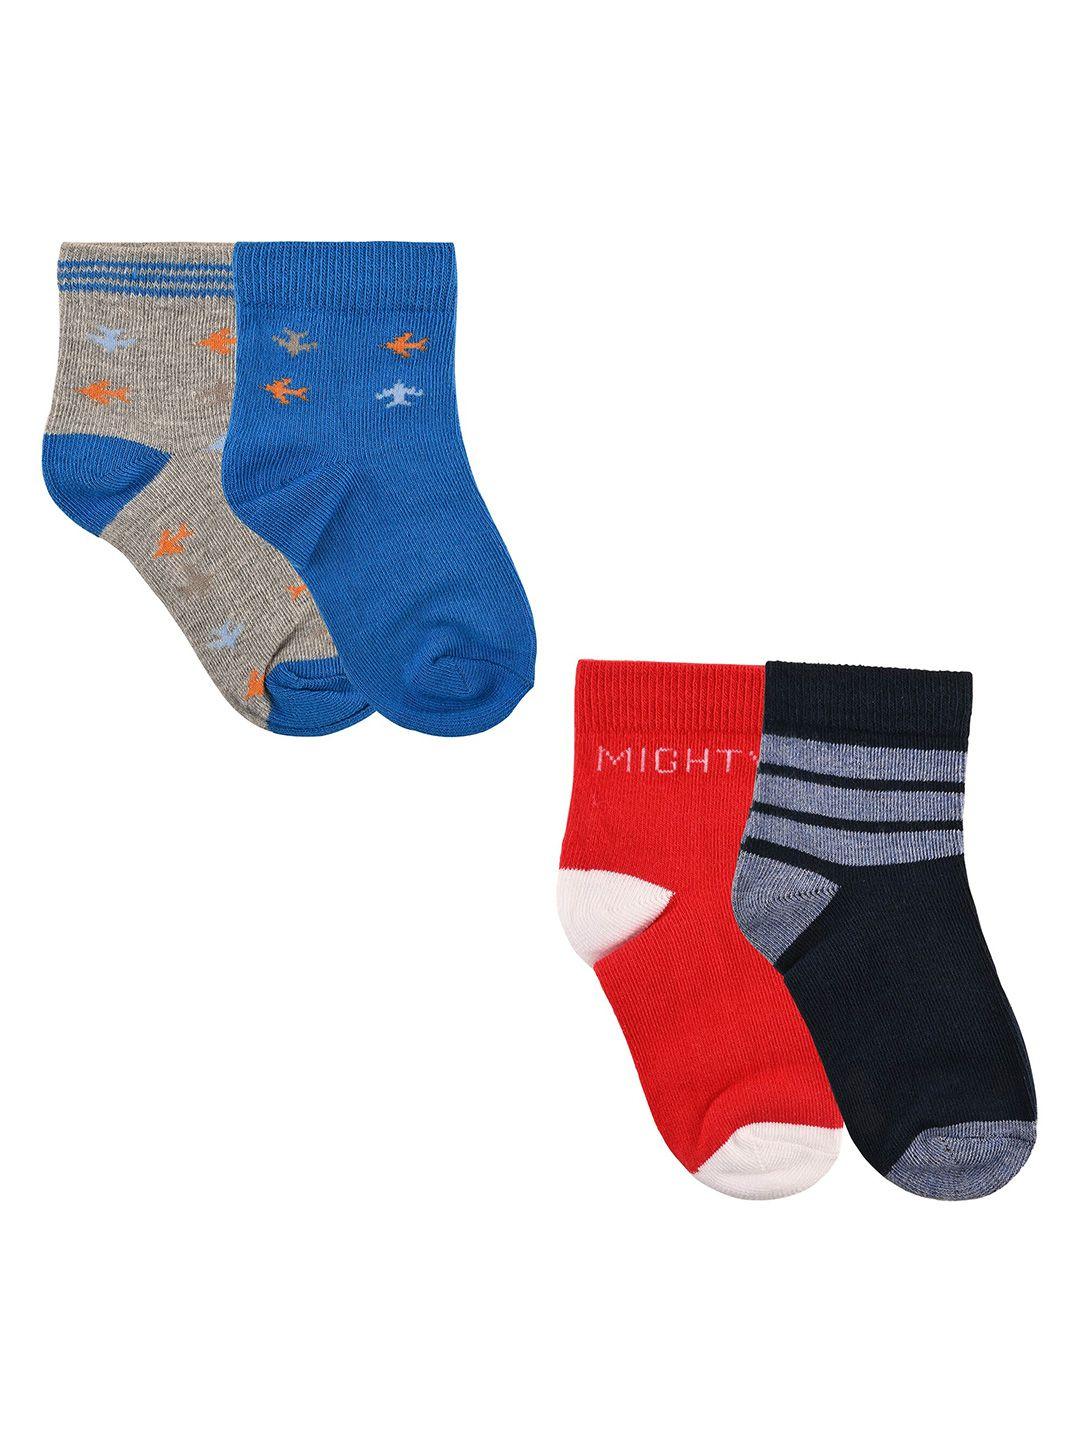 nuluv boys set of 4 patterned ankle length socks